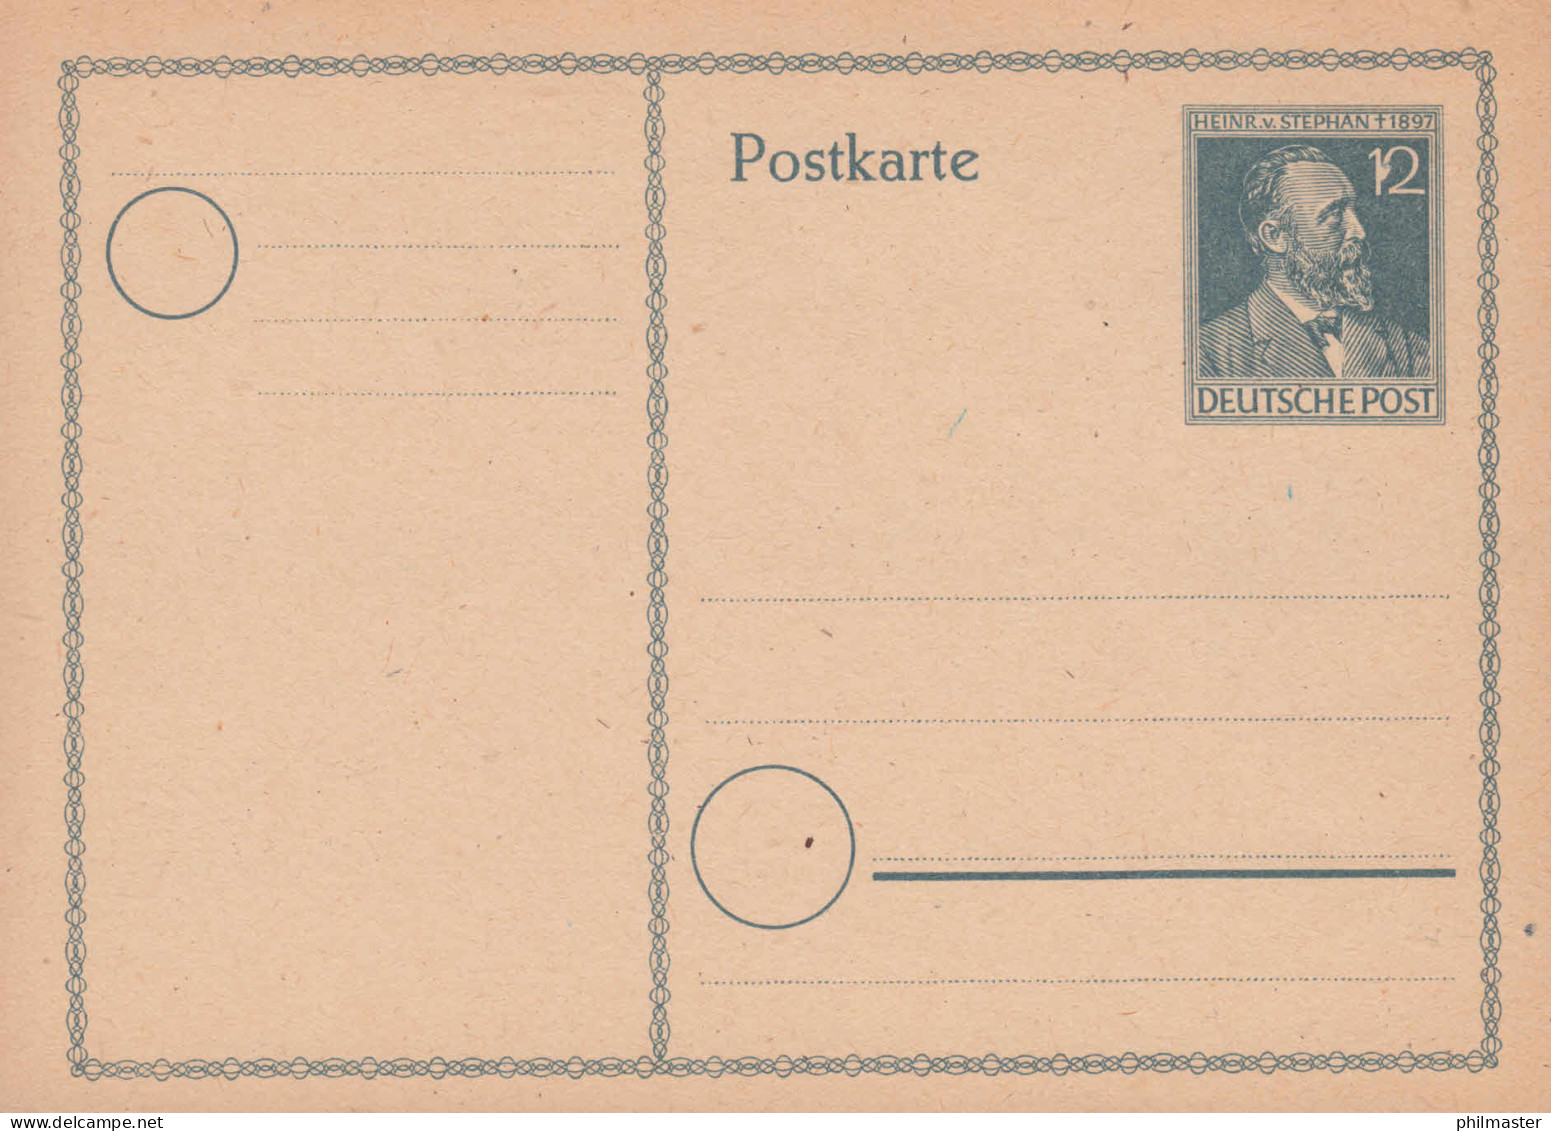 Postkarte P 965 Stephan Mit PLF Fleck Zwischen Der 1 Und 2 Der 12, Postfrisch ** - Mint